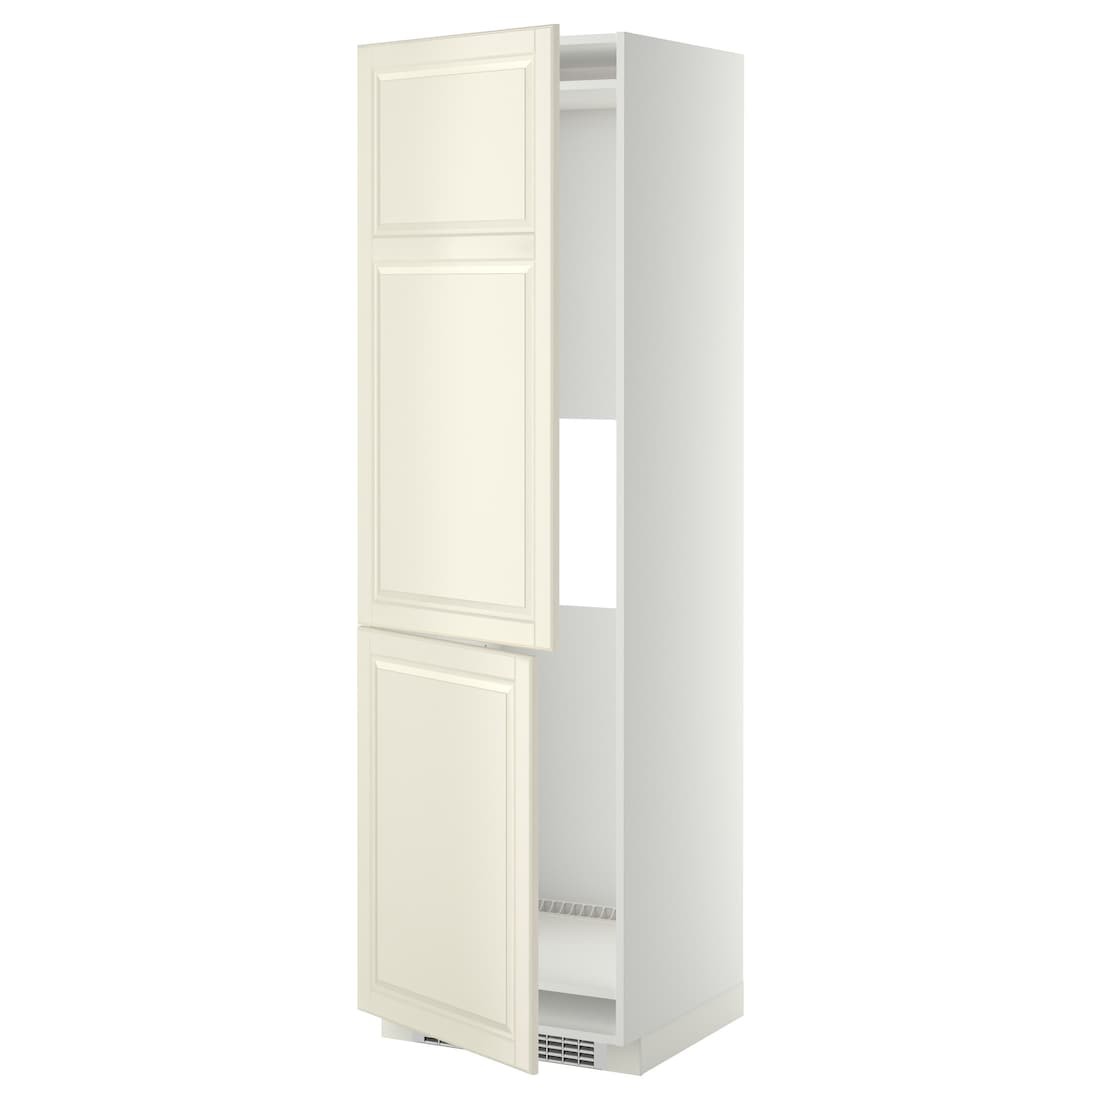 IKEA METOD МЕТОД Высокий шкаф для холодильника / морозильника, белый / Bodbyn кремовый, 60x60x200 см 19925534 199.255.34